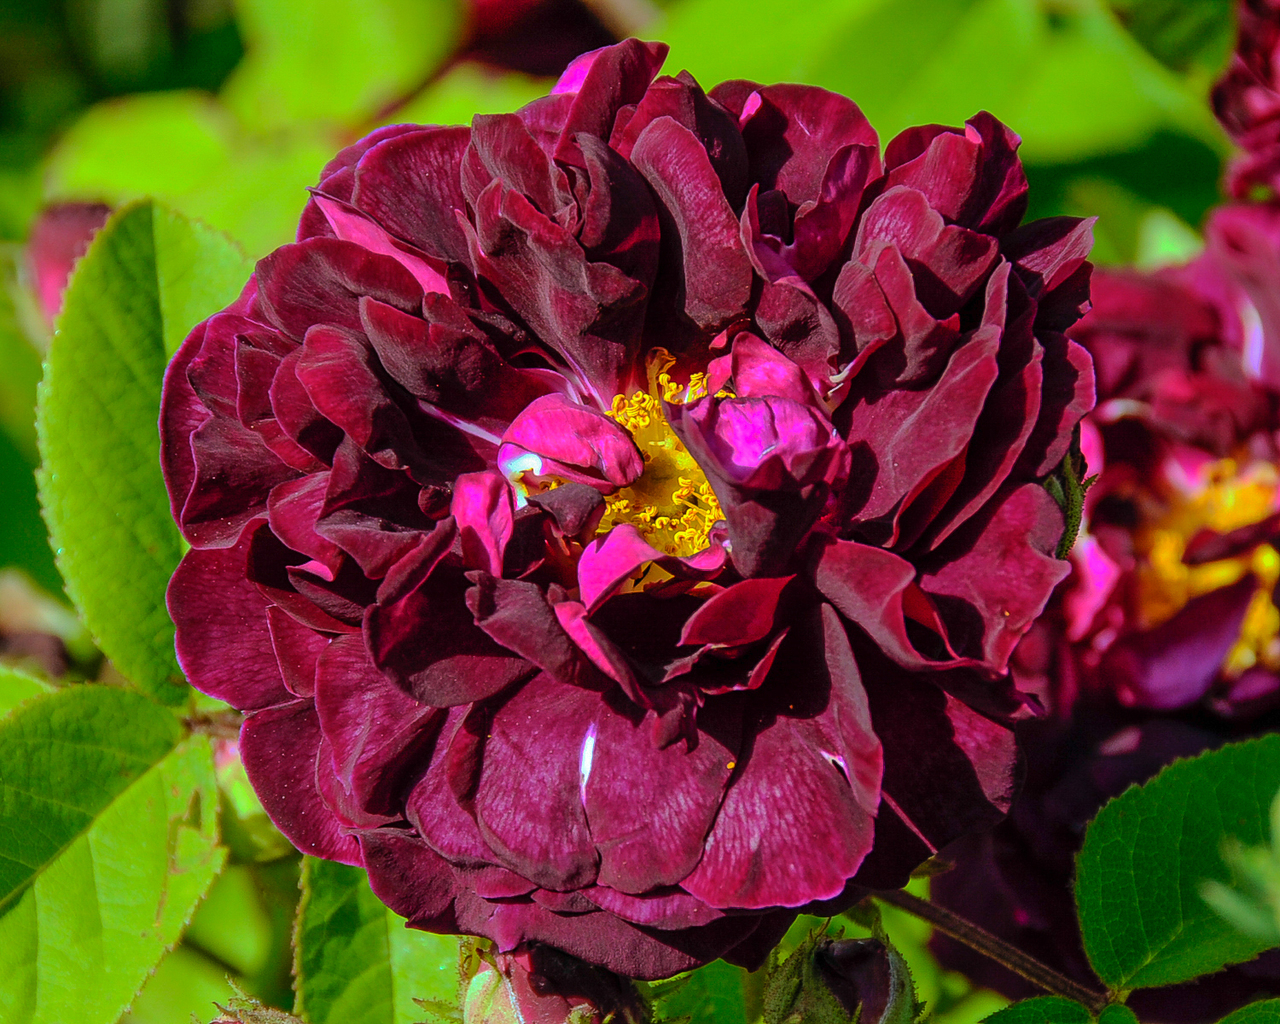 dunkelrote, gefüllte Blüte einer Gallica-Rose, Sorte 'Tuscany Superb'